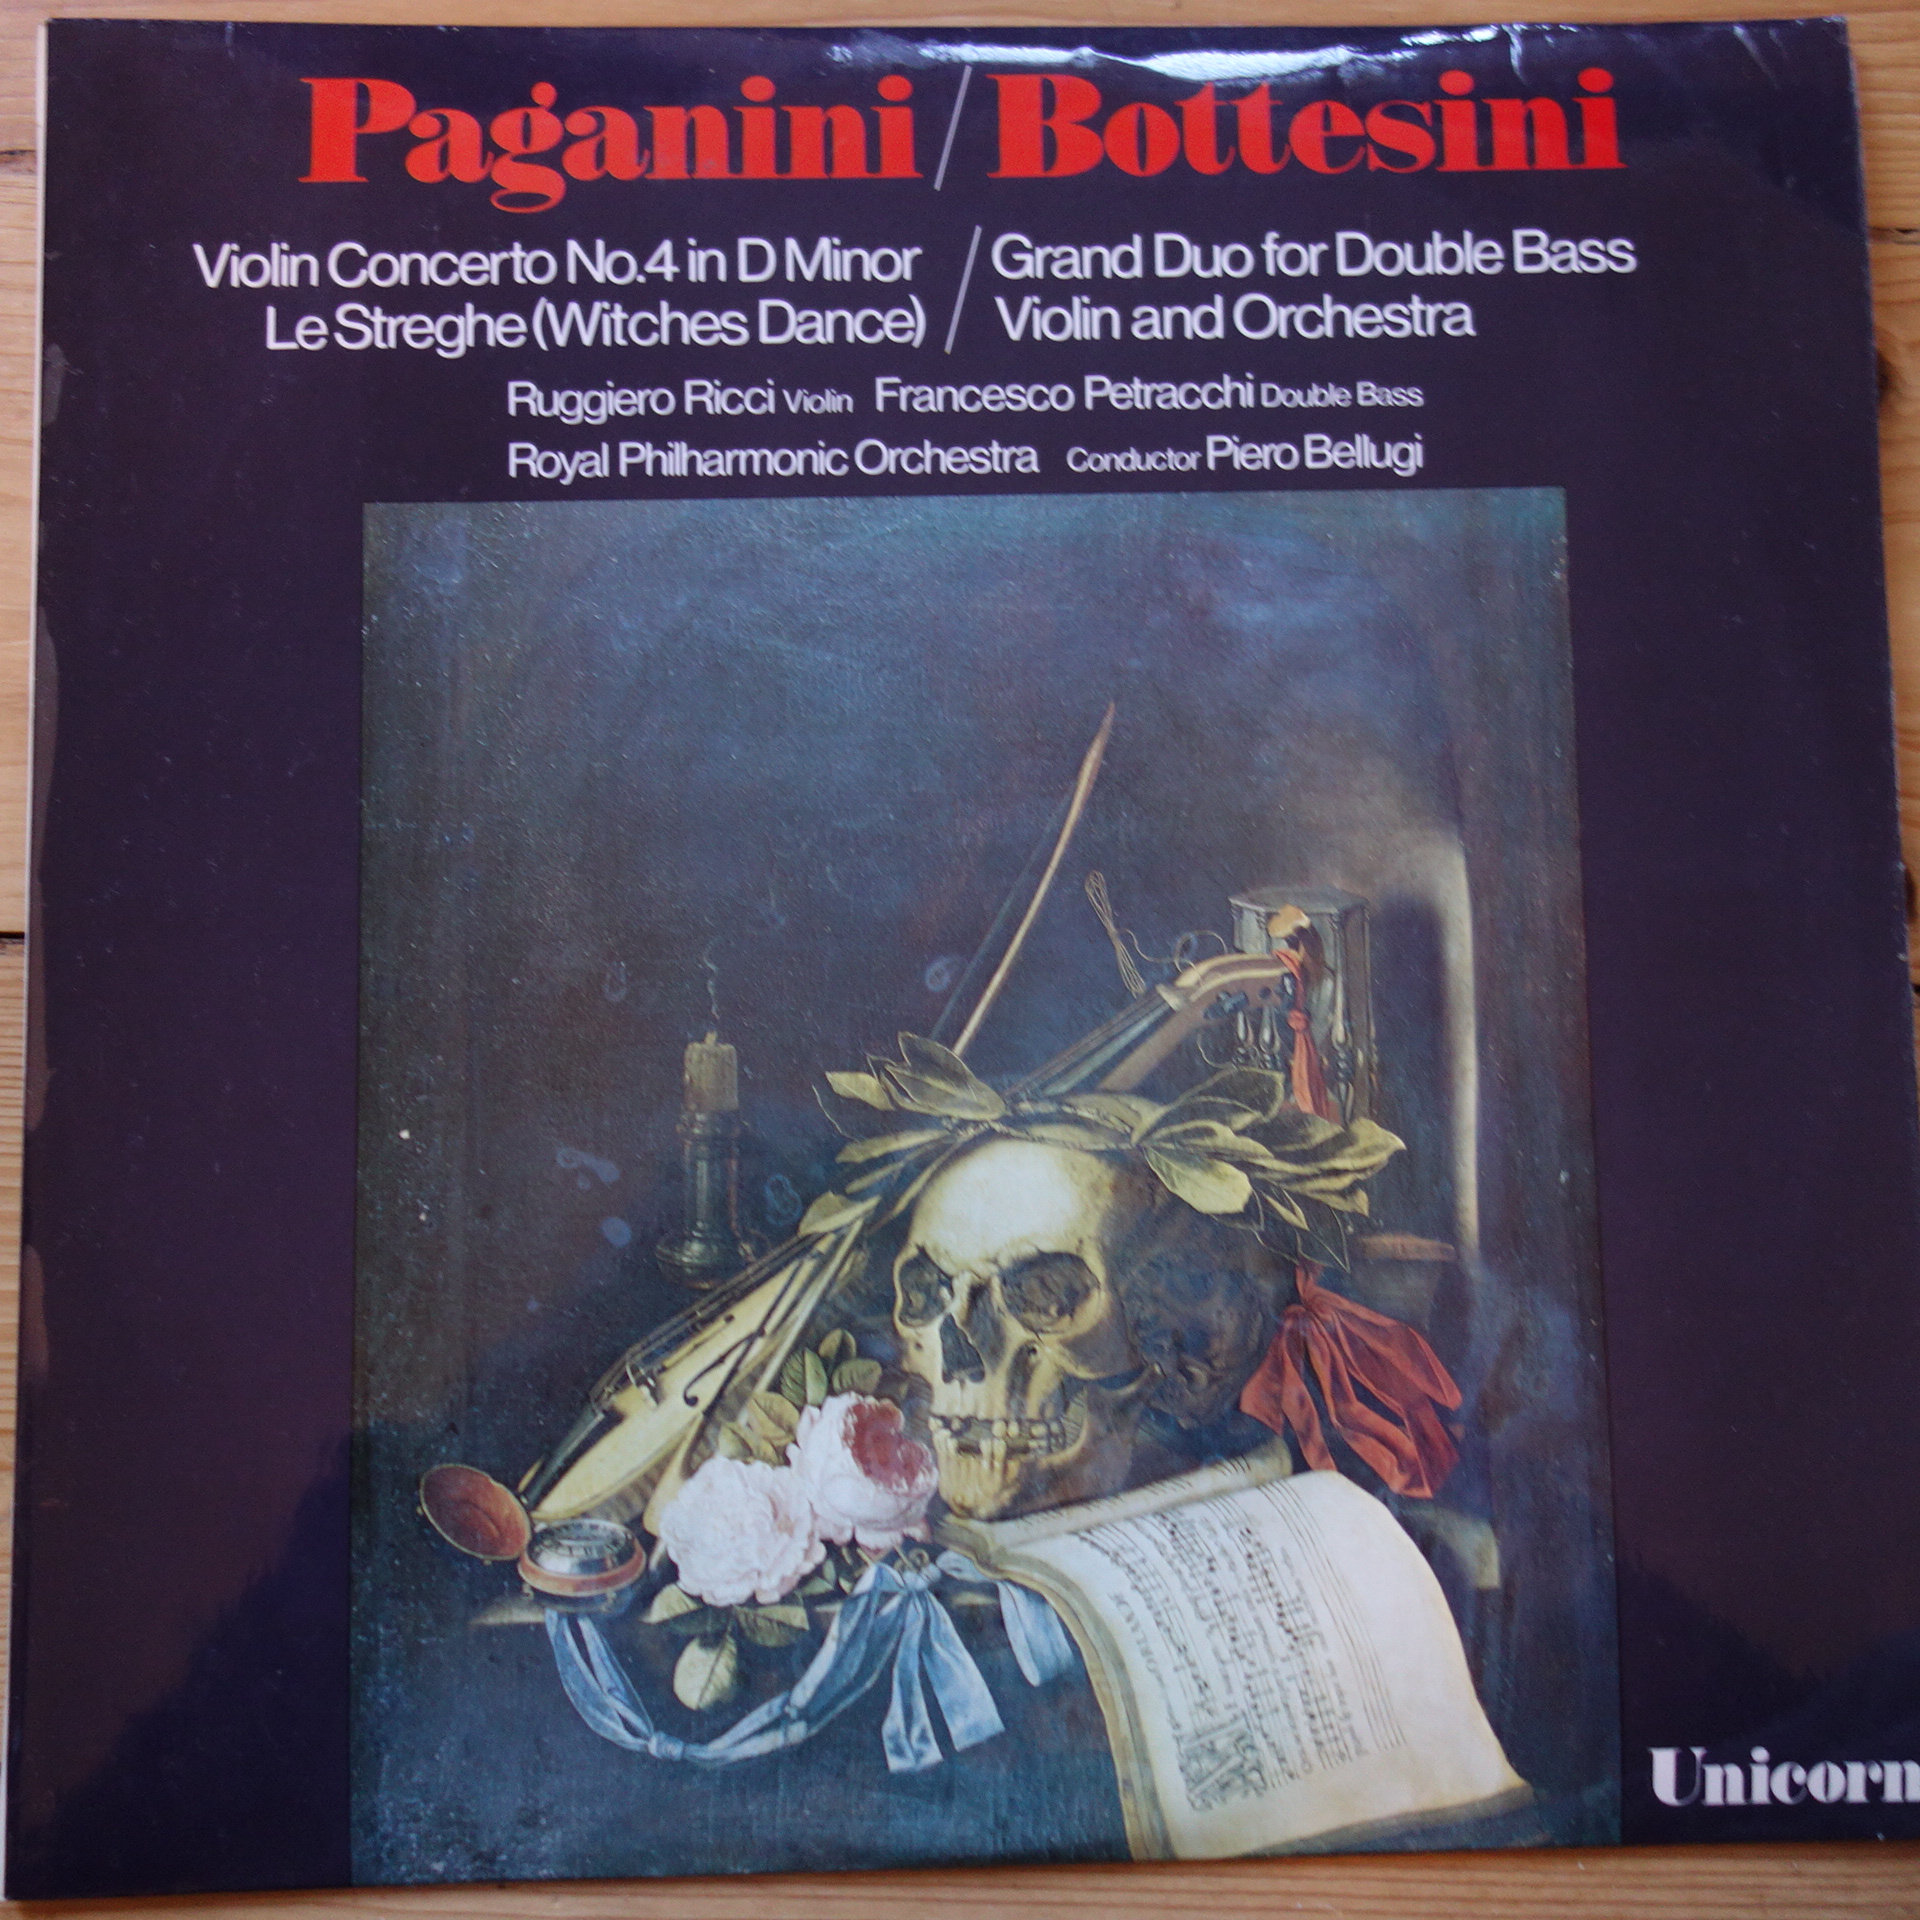 RHS 304 Paganini Violin Concerto No.4 / Bottesini Grand Duo